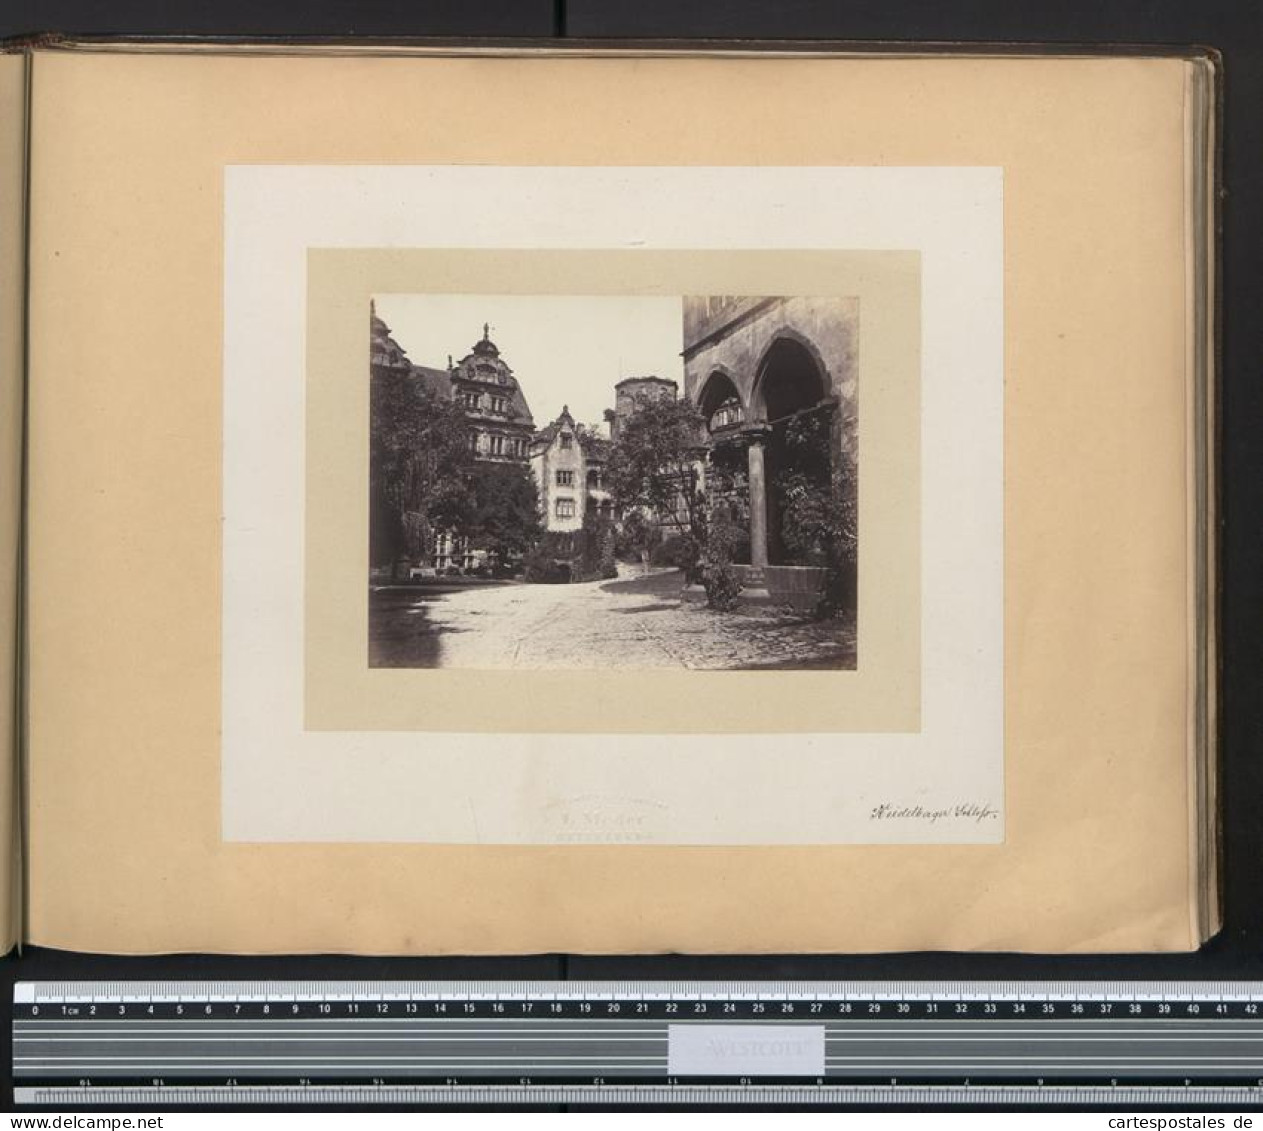 Fotoalbum mit 57 Fotografien, Alexandra v. Sachsen-Altenburg, Frankfurt / Main mit Synagoge, Danzig, Bad Reichenhall 